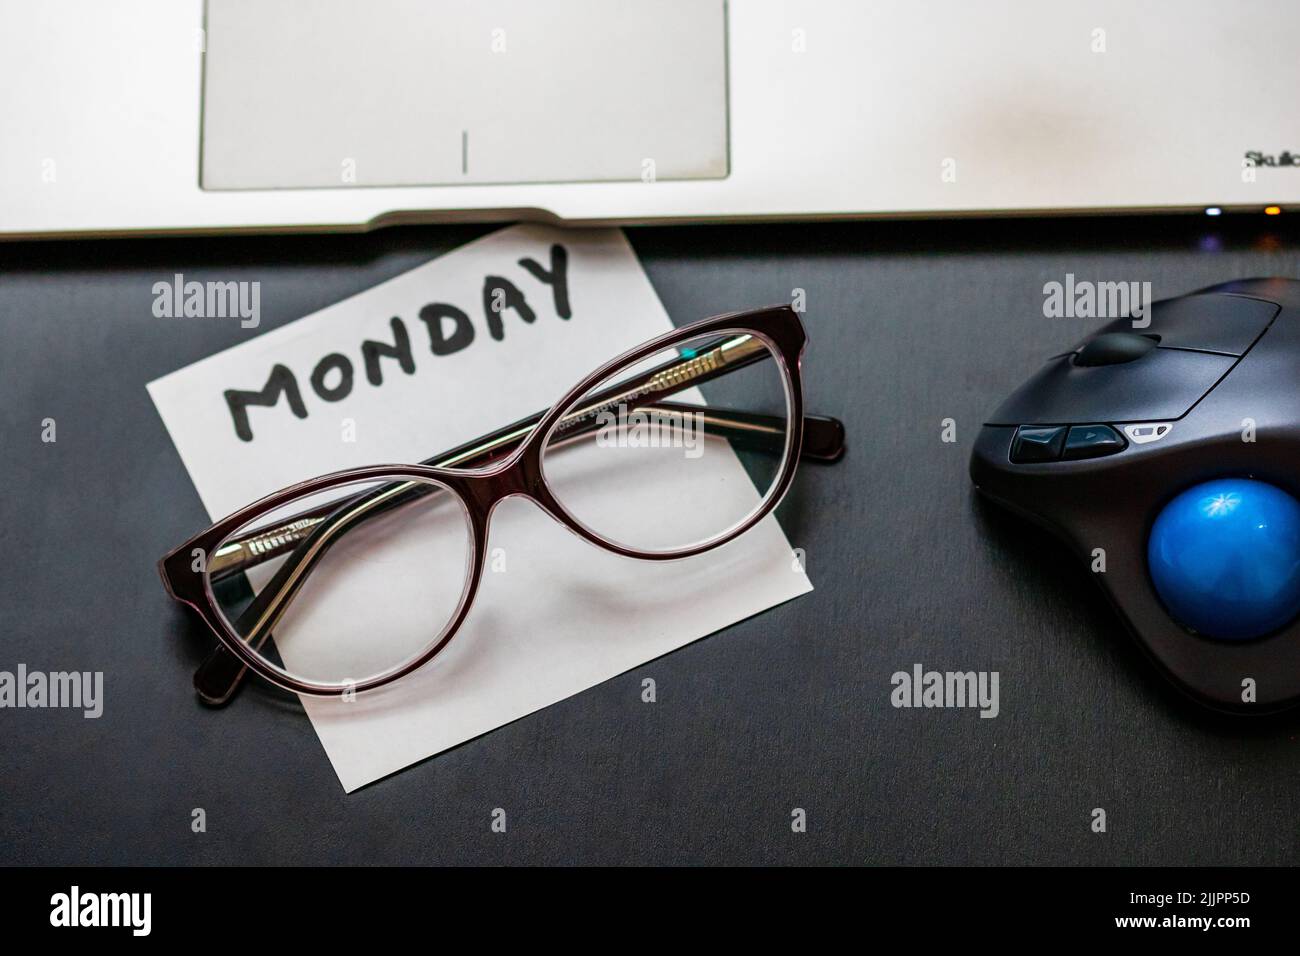 Gli occhiali, la nota, il mouse e il computer portatile su un tavolo in ufficio Foto Stock